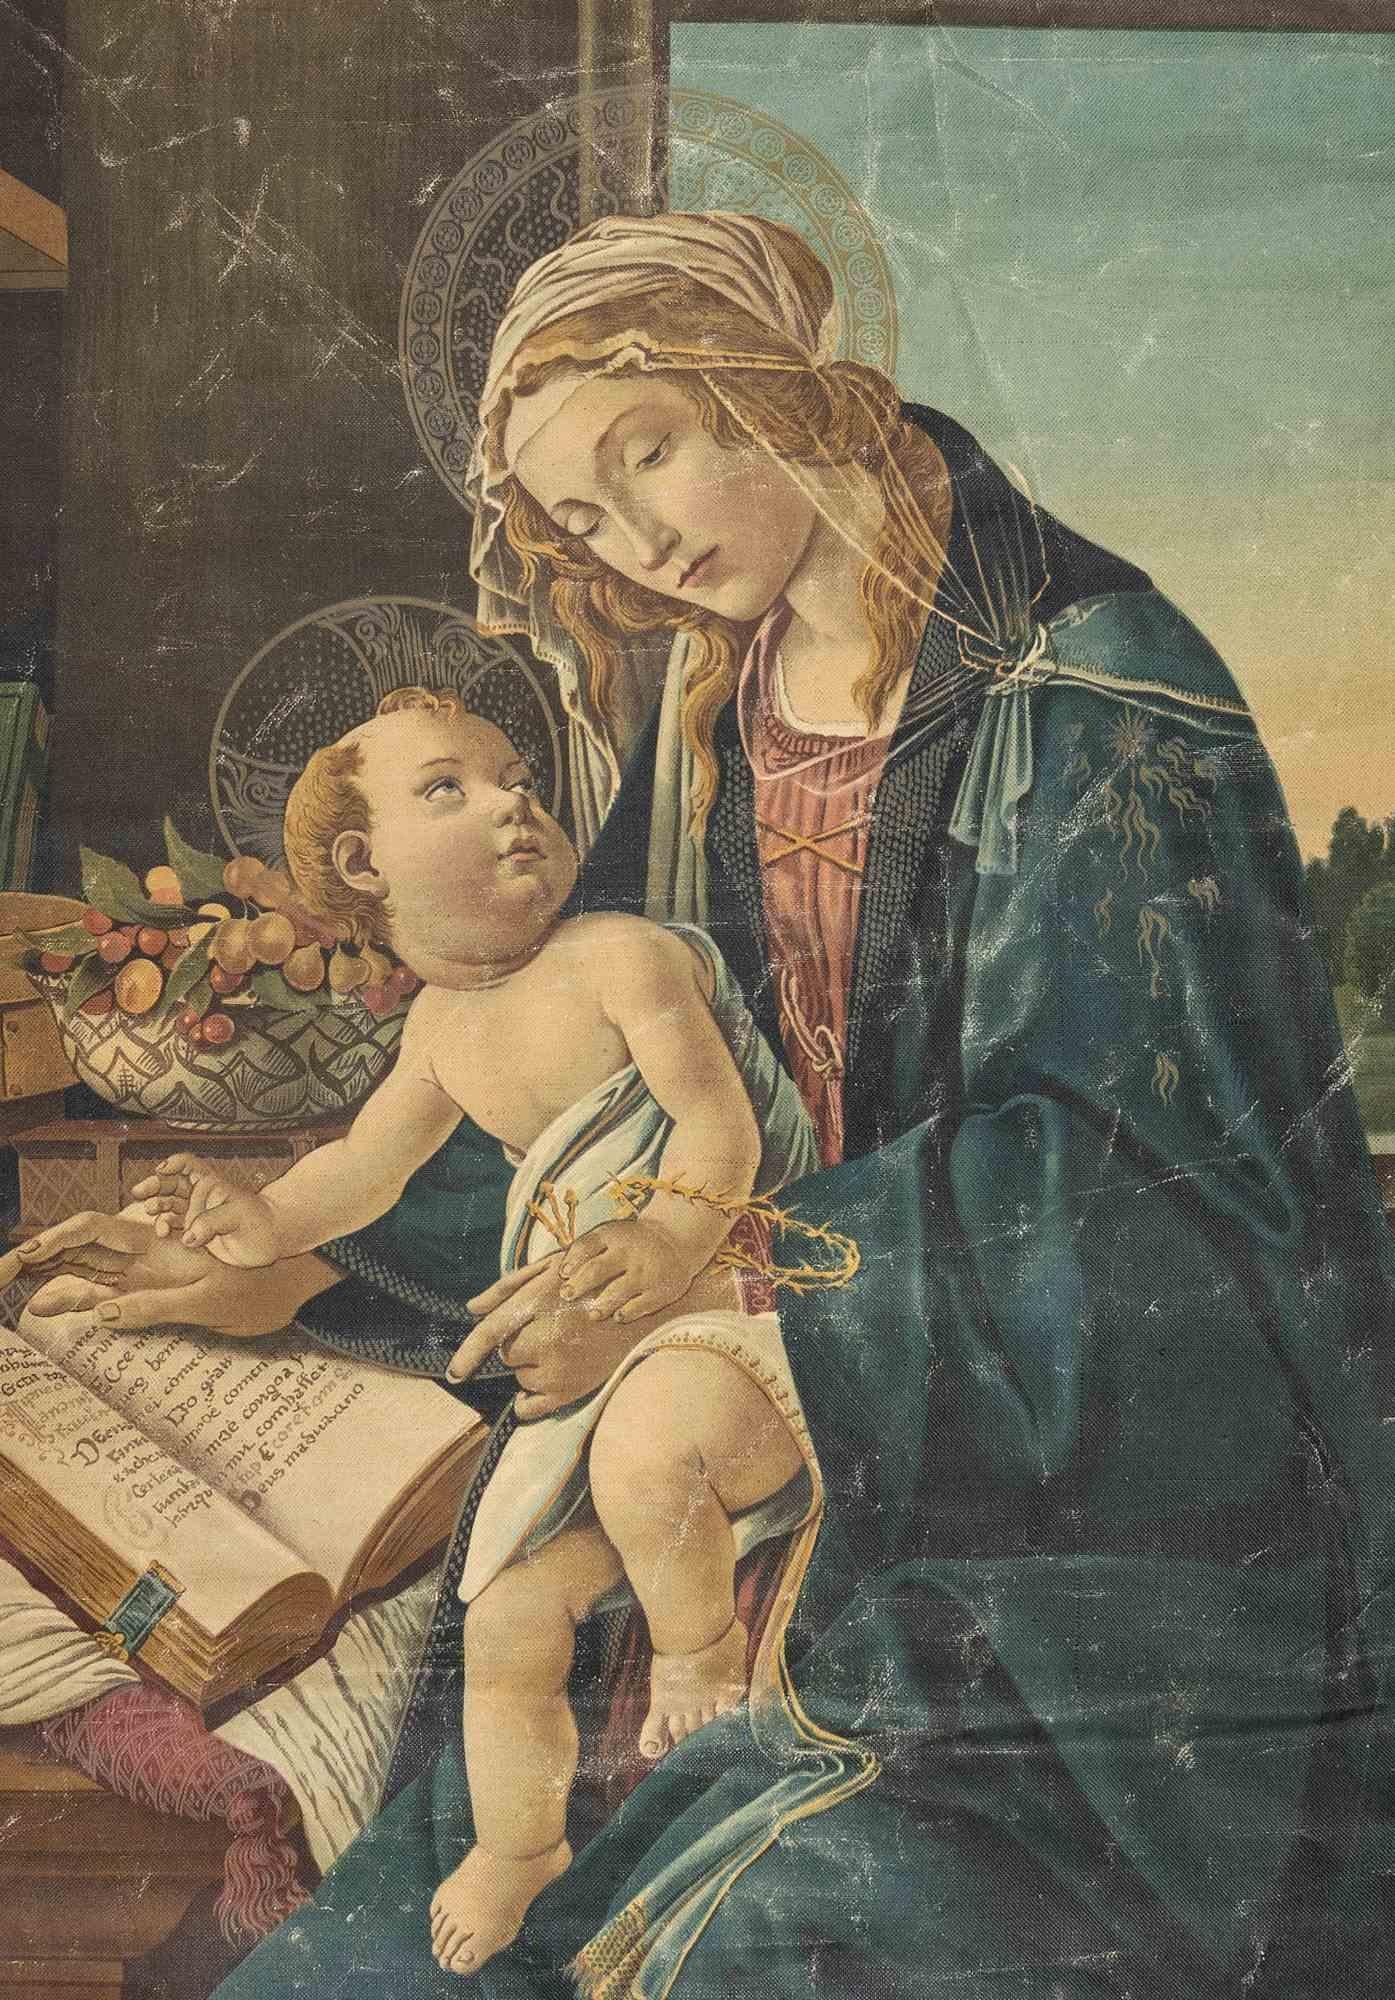 La Vierge à l'enfant est une reproduction de la Madonna del Libro, de Sandro Botticelli, réalisée en Italie dans les années 1940. 

Bordure et frange en tissu.

Support standard en laiton.

98x71 cm - 97x73 seulement standard.

Bon état à